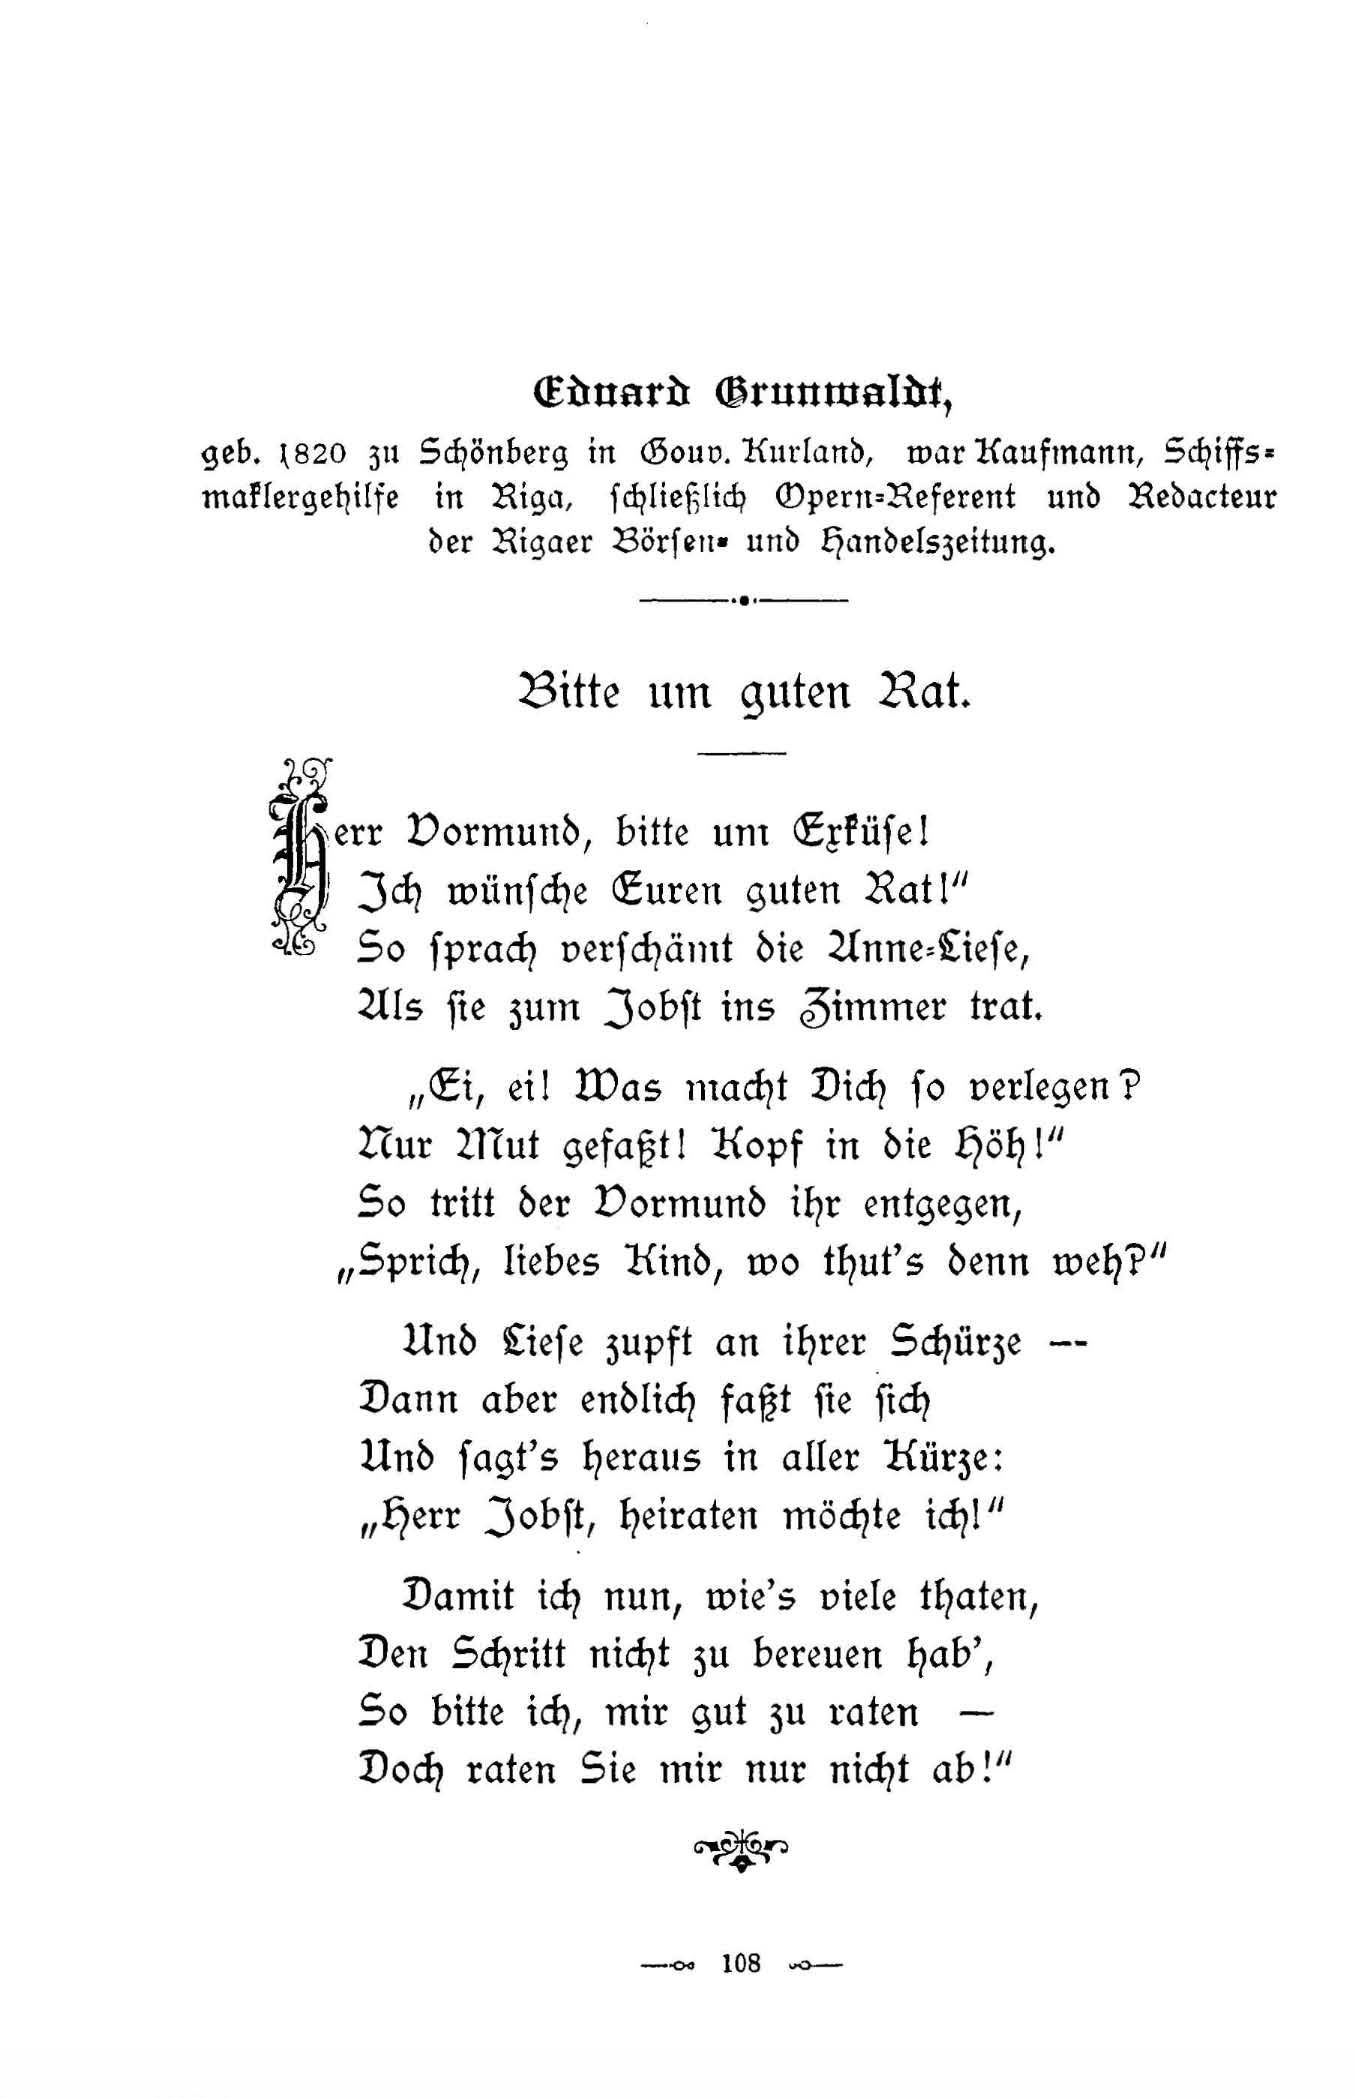 Bitte um guten Rat (1896) | 1. (108) Main body of text